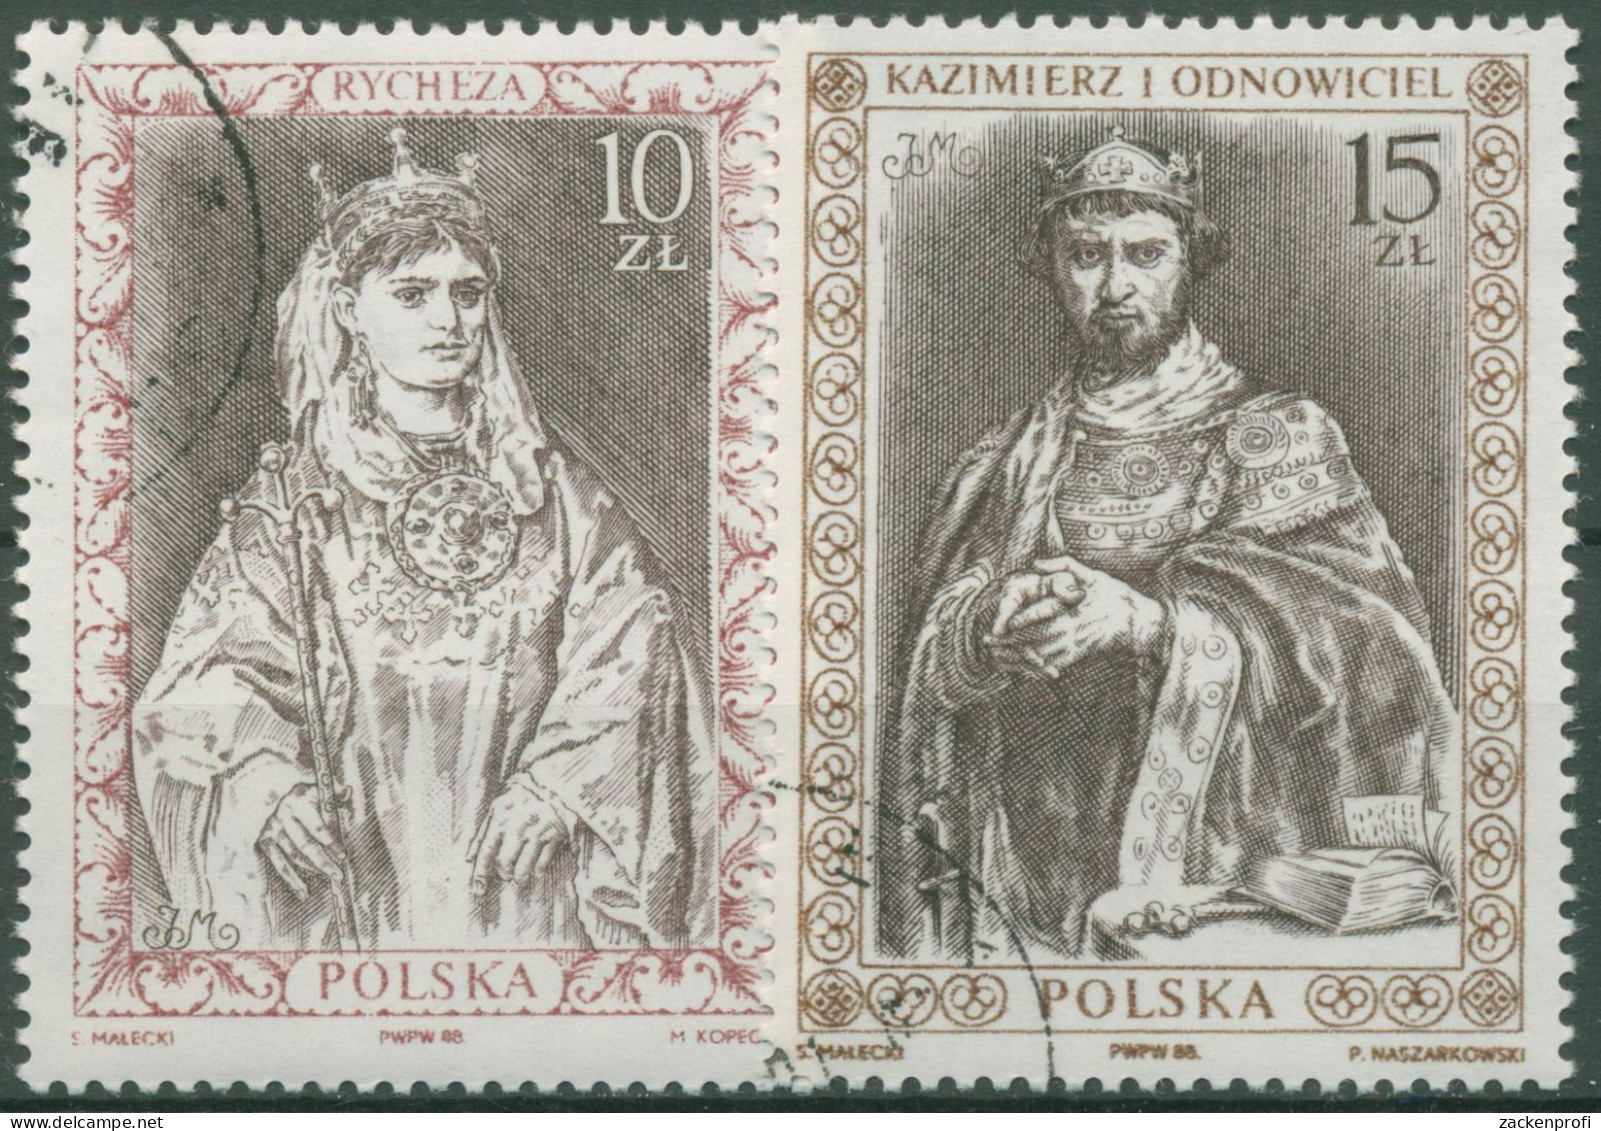 Polen 1988 Königin Richeza V. Lothringen, König Kasimir I. 3178/79 Gestempelt - Gebraucht